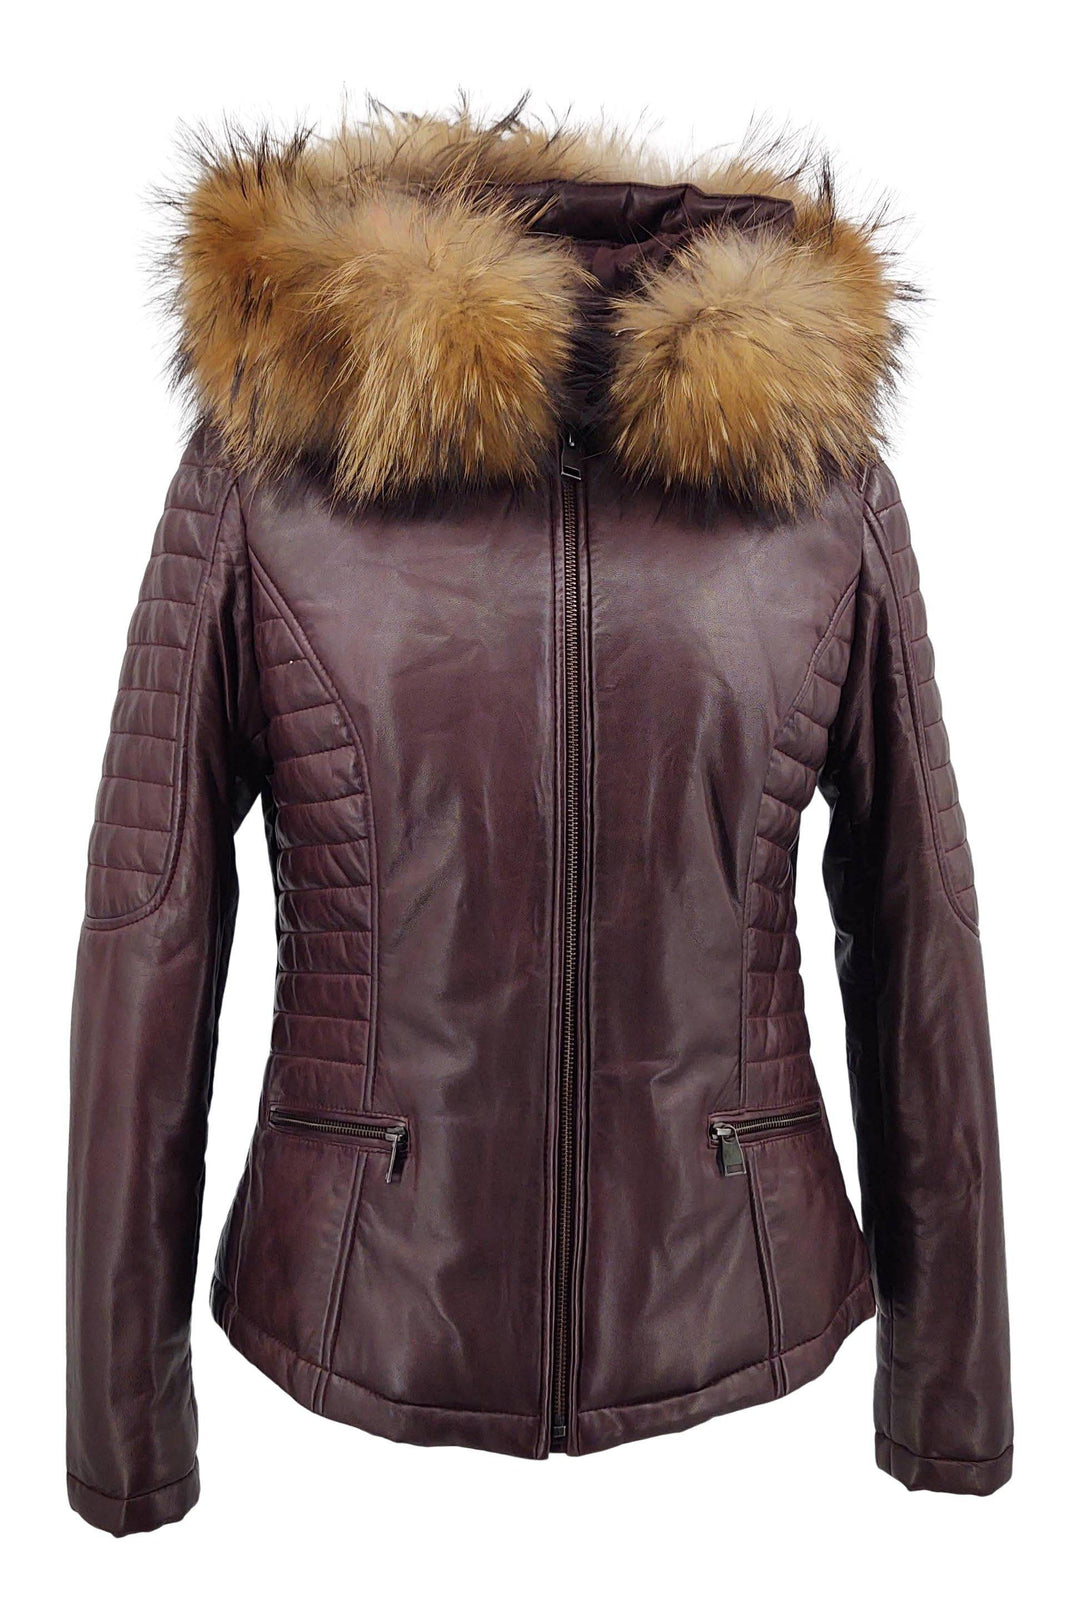 Bette - Hood - Lamb Malli Leather - Women - Bordeaux / Læder Skinds Jakke - Levinsky - Kvinde | STAMPE PELS